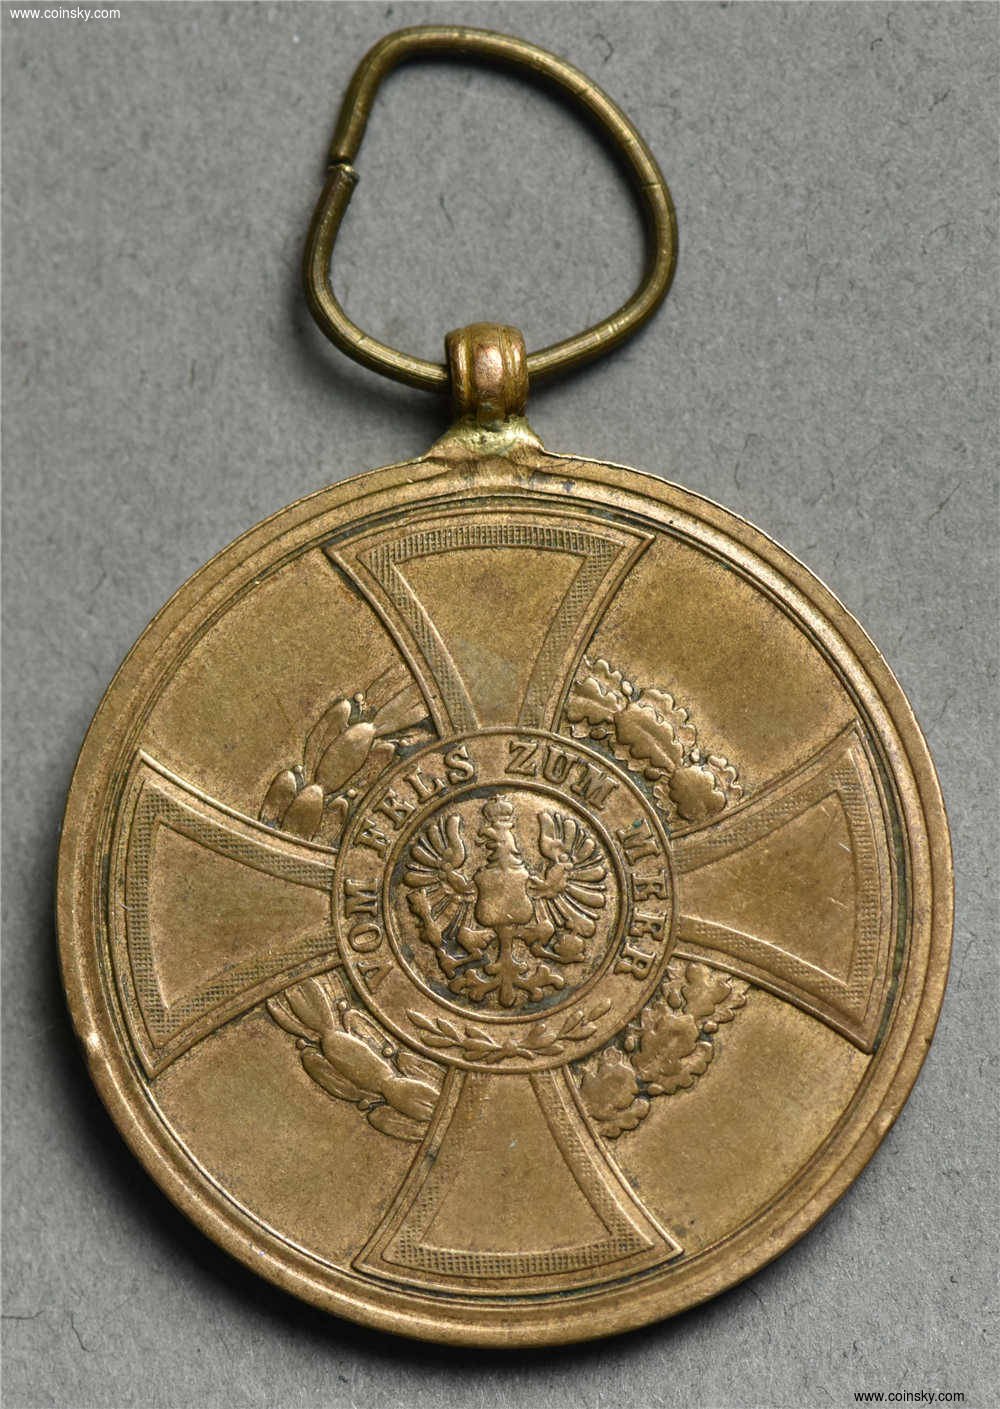 钱币天堂·交易区详情·修远堂收藏 少见1848年普鲁士丹麦战争勋章